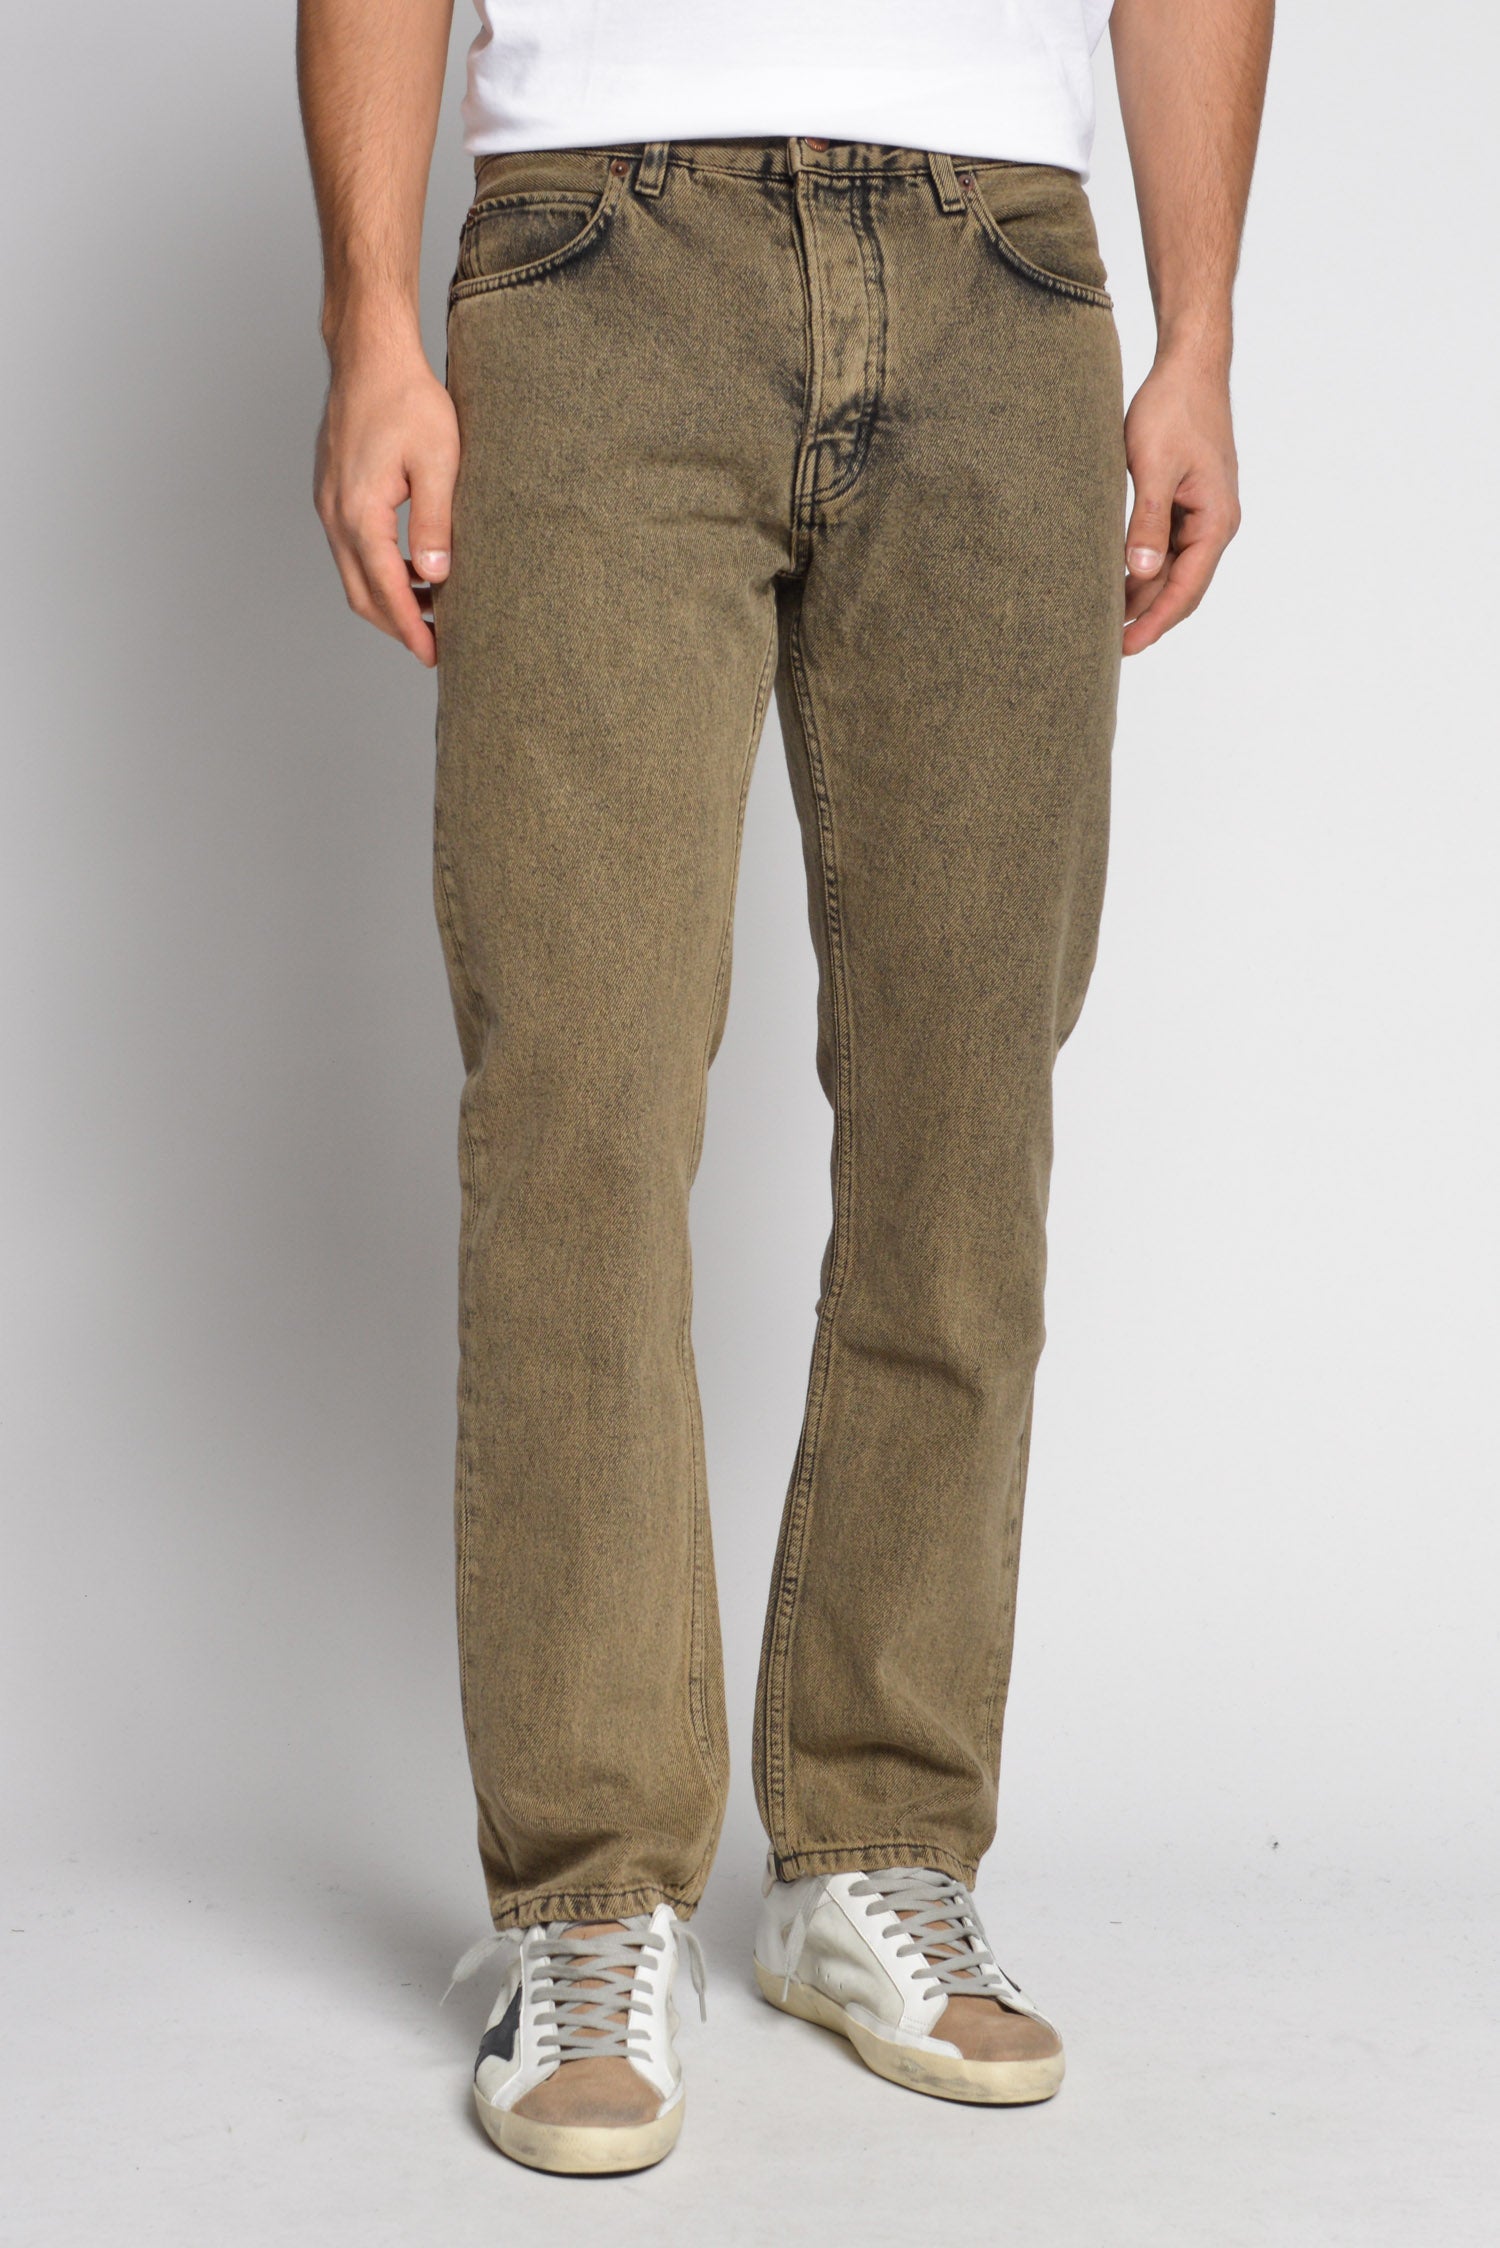 Jeans cinque tasche effetto sbiadito Ventis Uomo Abbigliamento Pantaloni e jeans Pantaloni Pantaloni a vita alta 